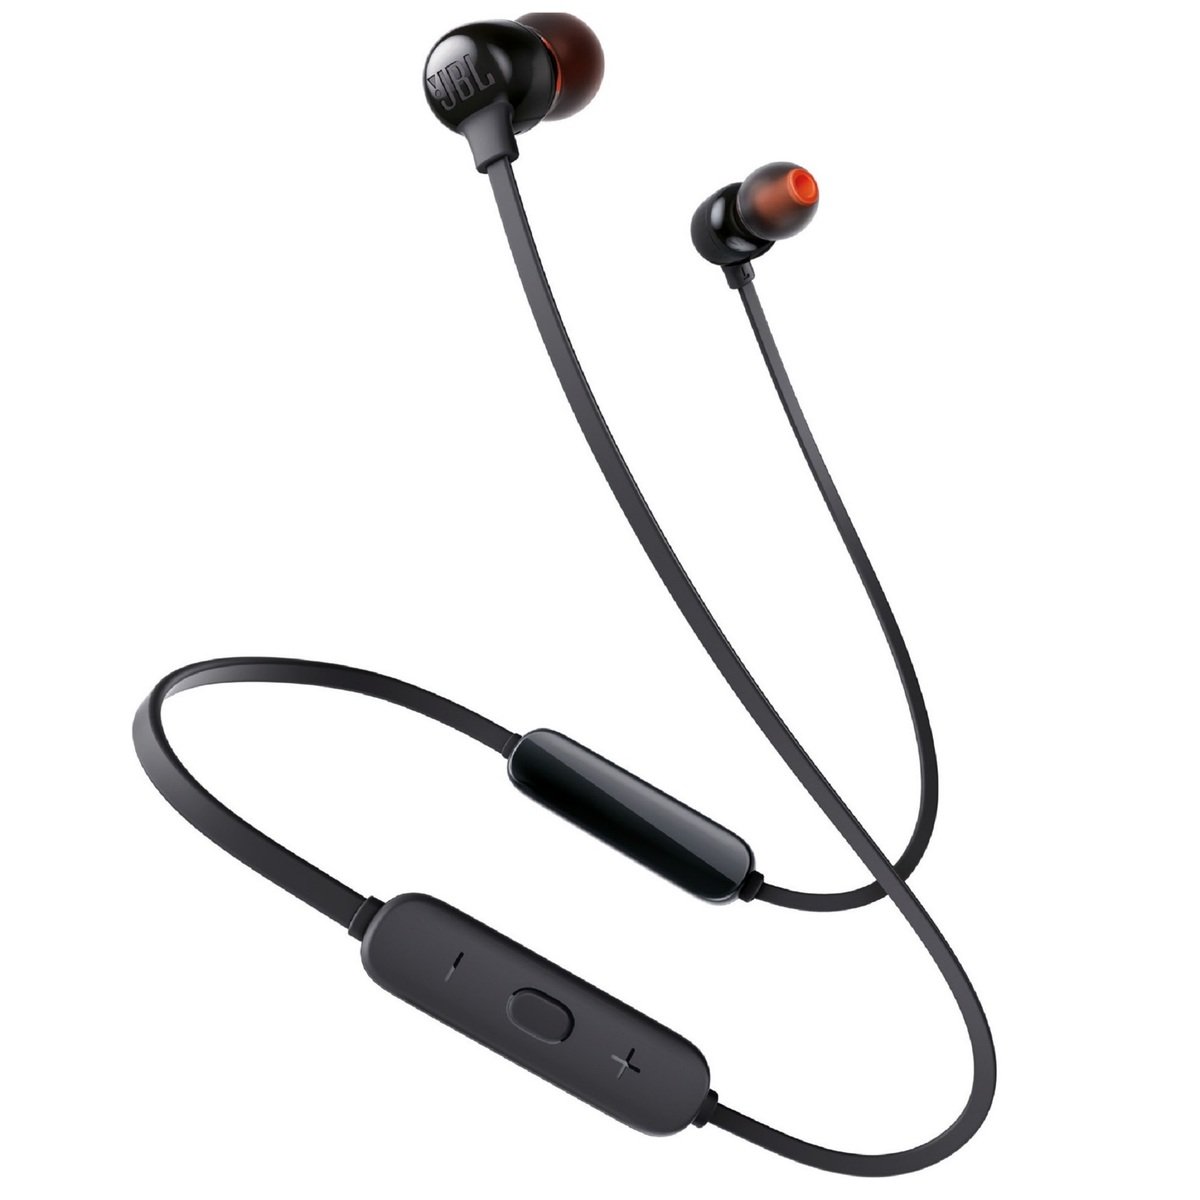 JBL  Wireless In Ear Headphone JBLT115BT Black